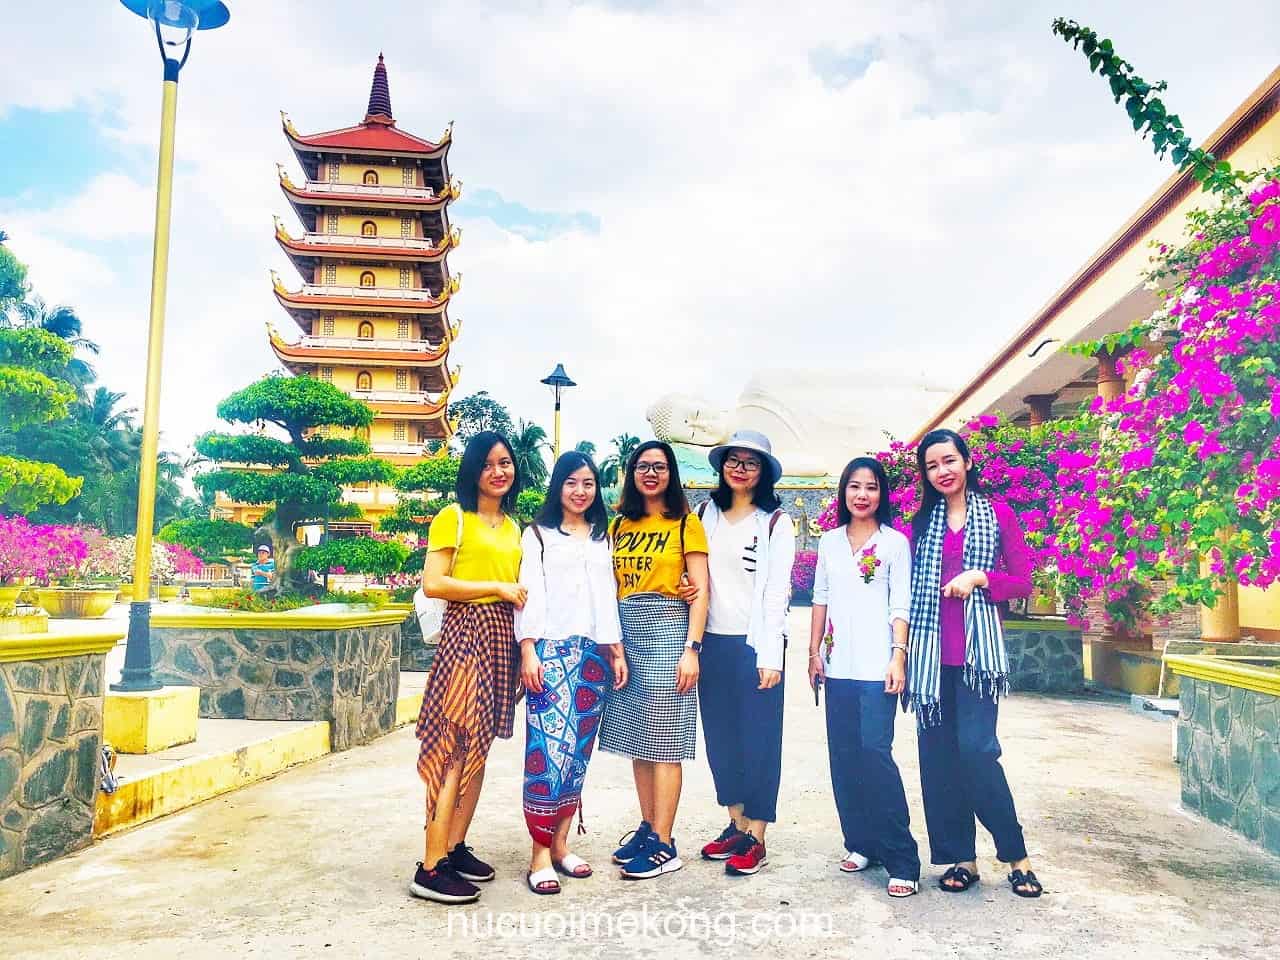 Tour du lịch Sài Gòn miền Tây 1 ngày - Viếng chùa Vĩnh Tràng